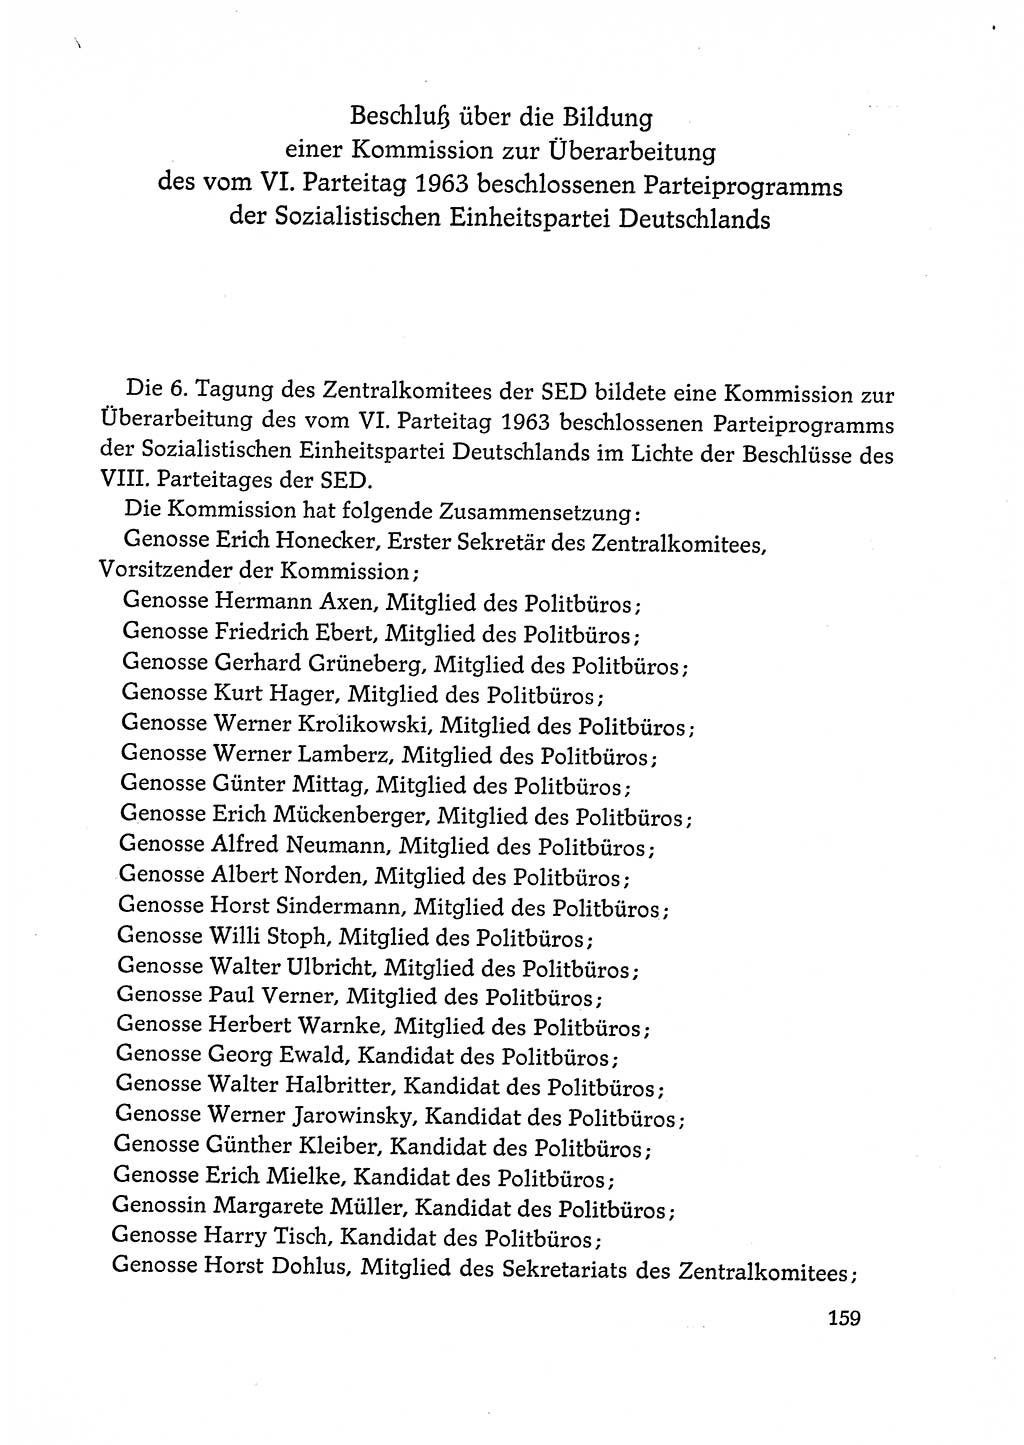 Dokumente der Sozialistischen Einheitspartei Deutschlands (SED) [Deutsche Demokratische Republik (DDR)] 1972-1973, Seite 159 (Dok. SED DDR 1972-1973, S. 159)